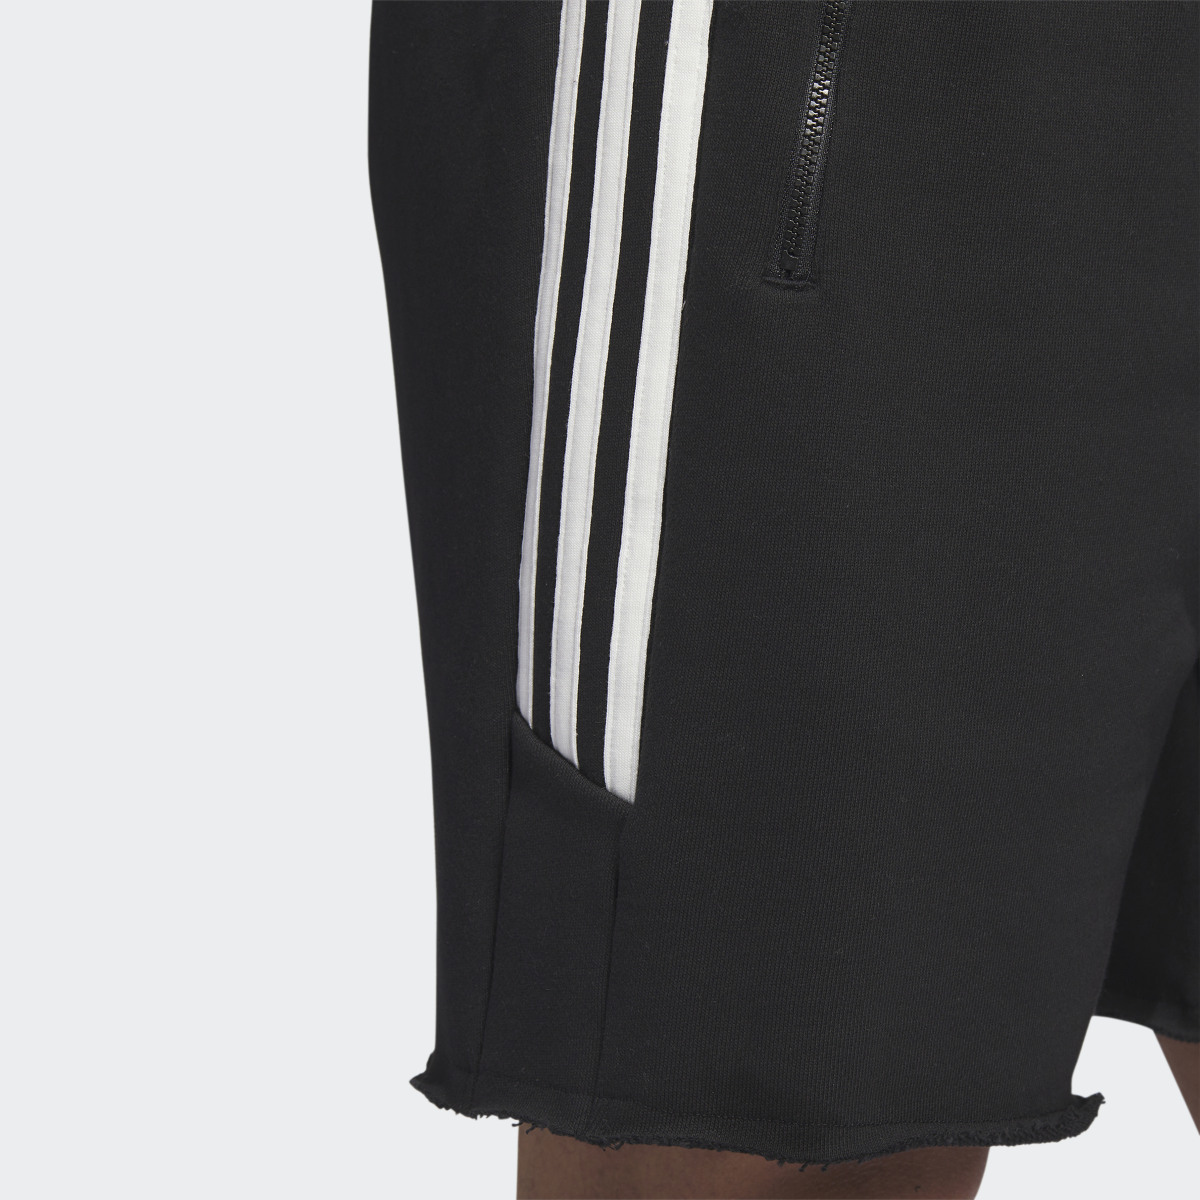 Adidas Trae Winterized Shorts. 8